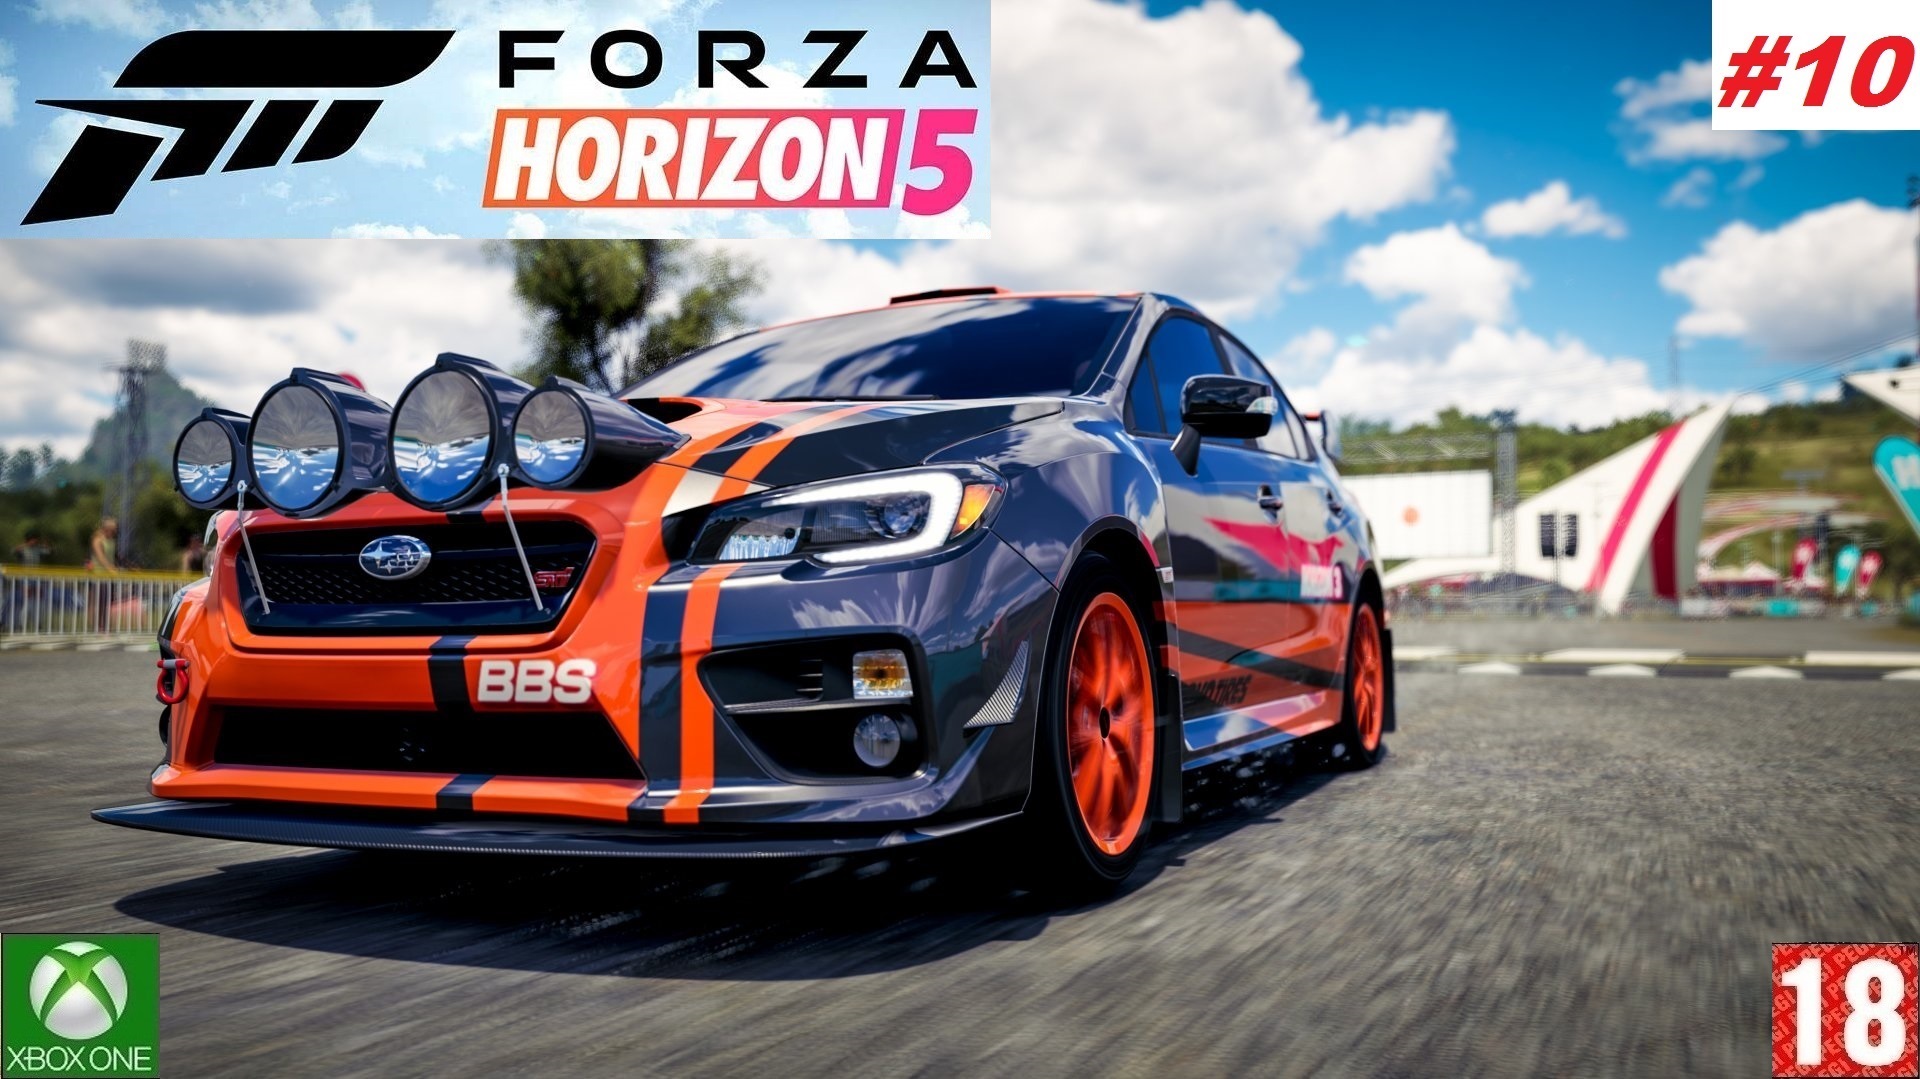 Forza Horizon 5 (Xbox One) - Прохождение - #10, Добро пожаловать в Мексику. (без комментариев)